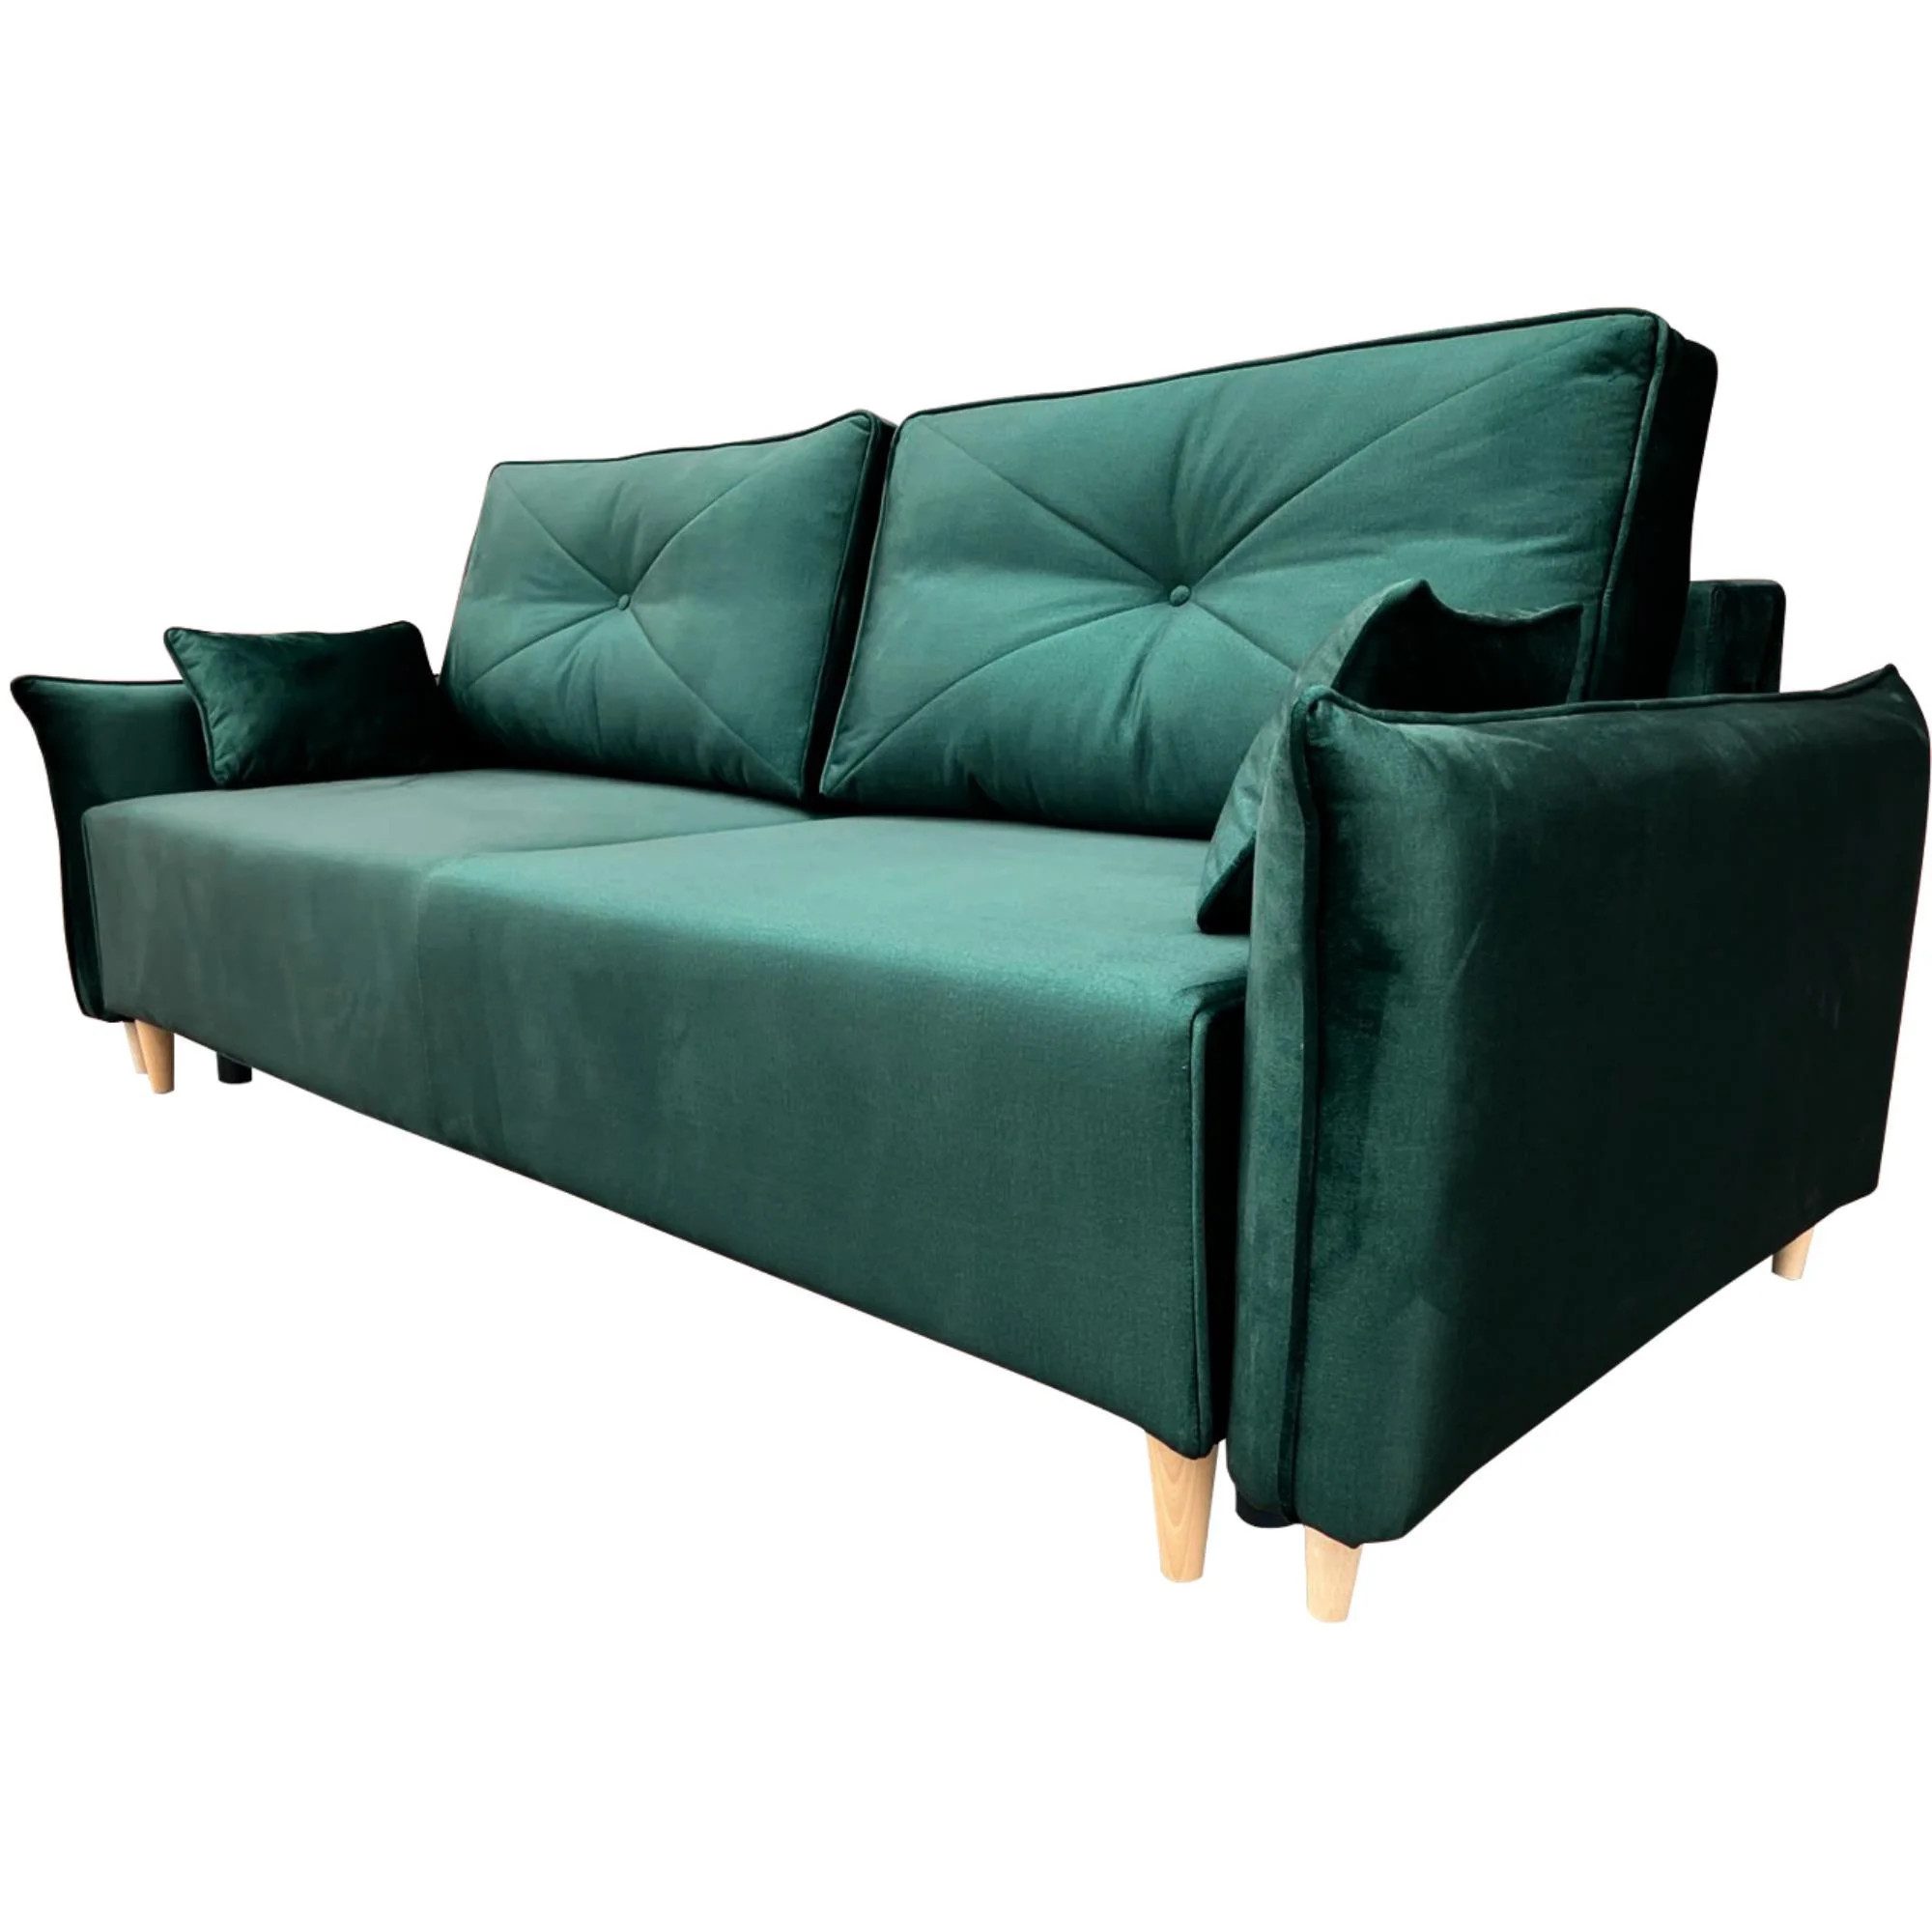 Beautysofa Sofa Modernes stilvolles bequemes Sofa mit großem Schlafbereich MONACO II, B:235/H:96/T:99cm